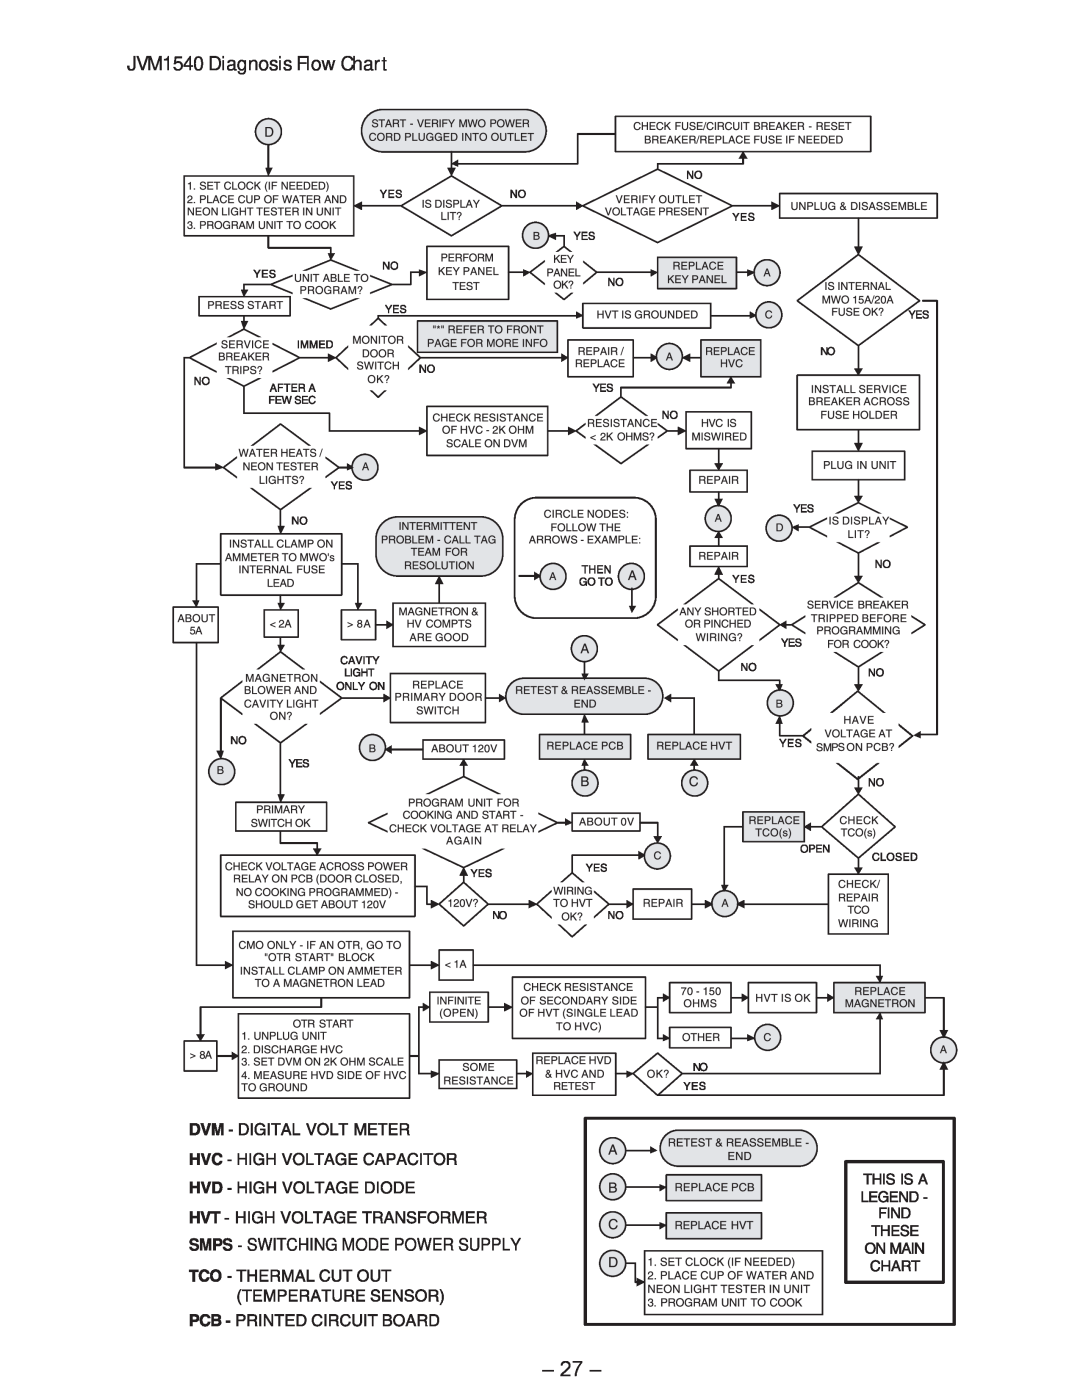 GE JVM1750 manual JVM1540 Diagnosis Flow Chart 